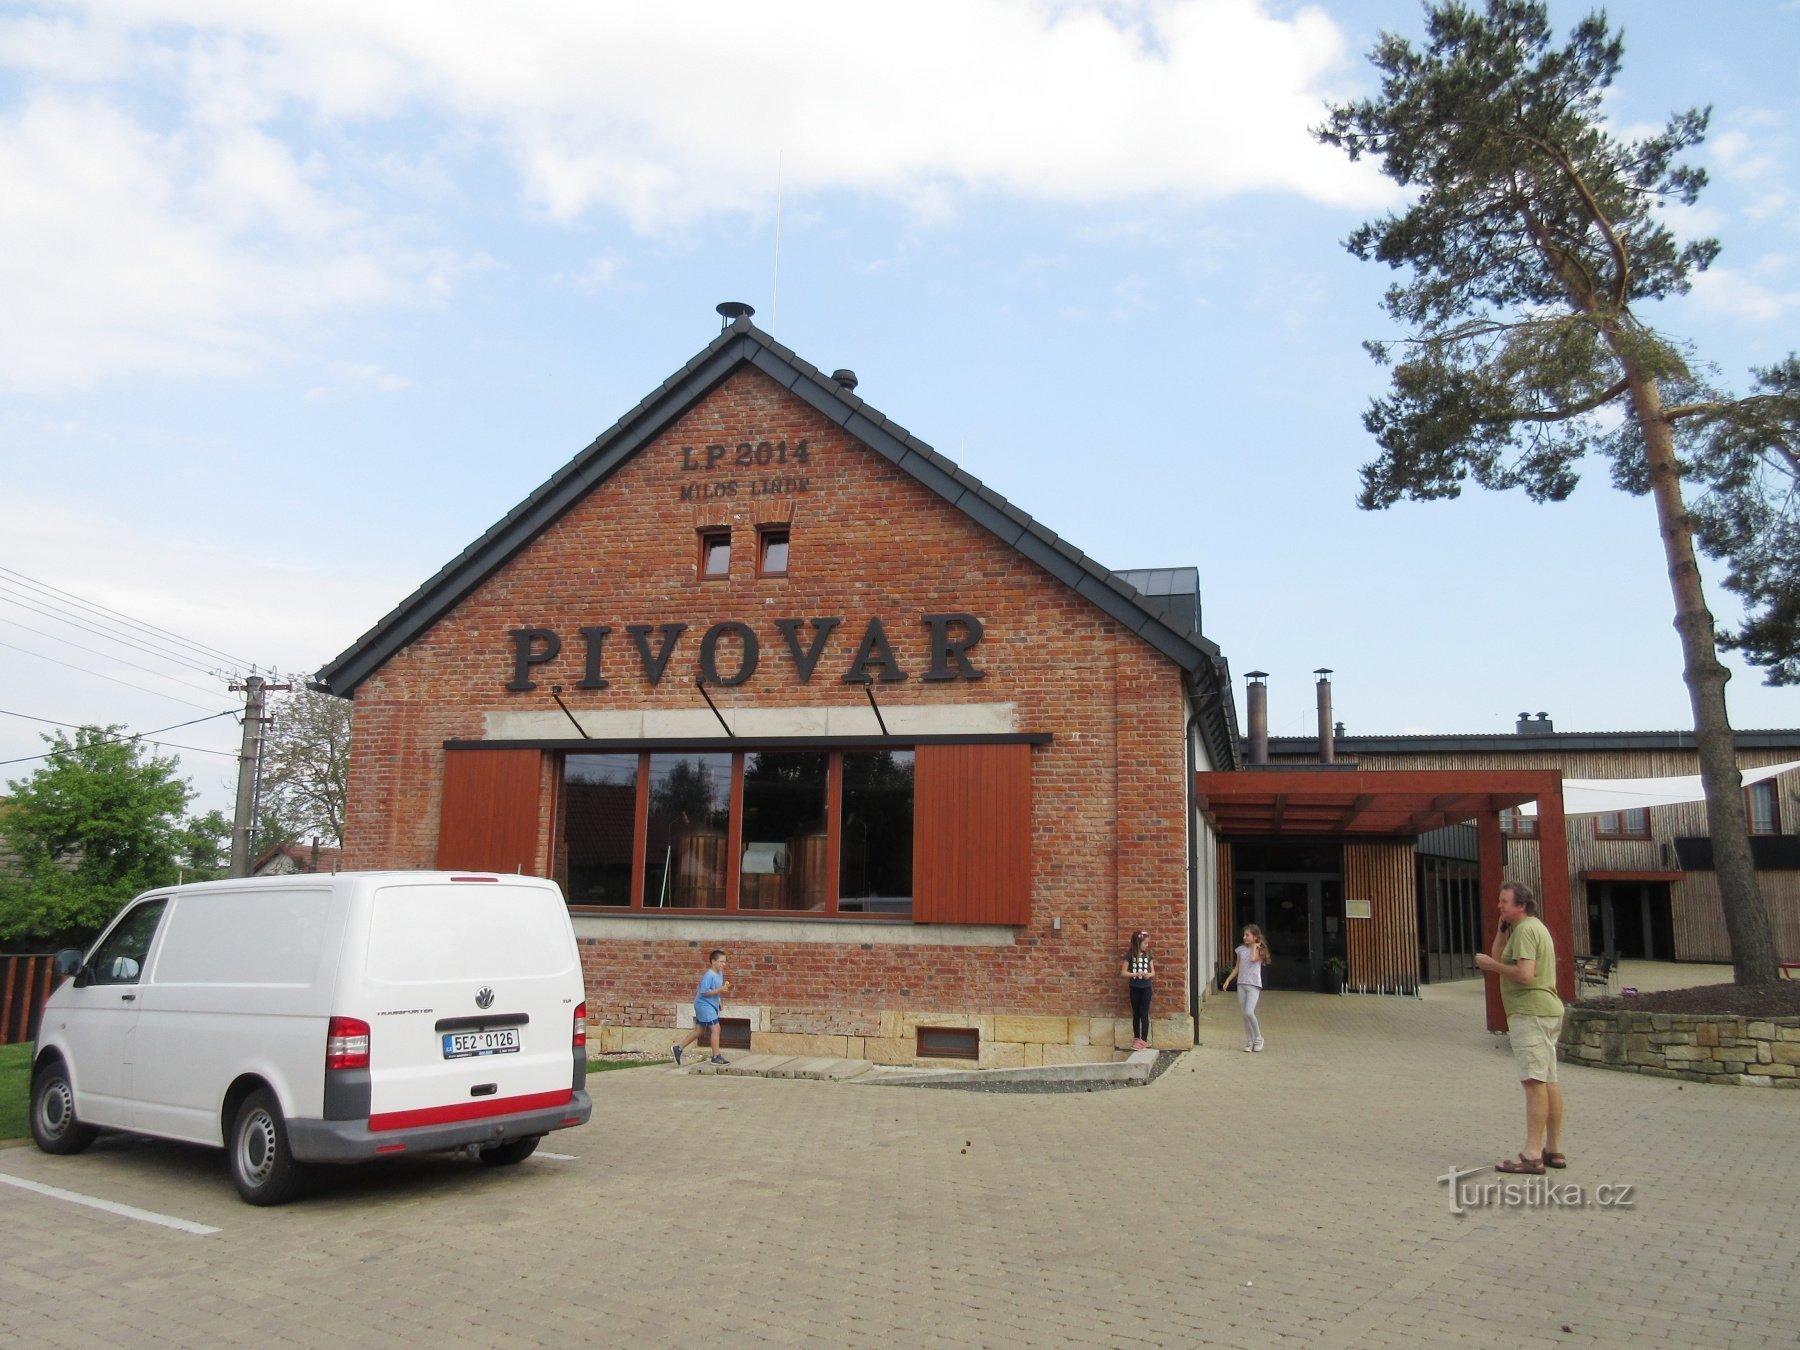 Mžany - multifunktionellt område och Lindr bryggeri